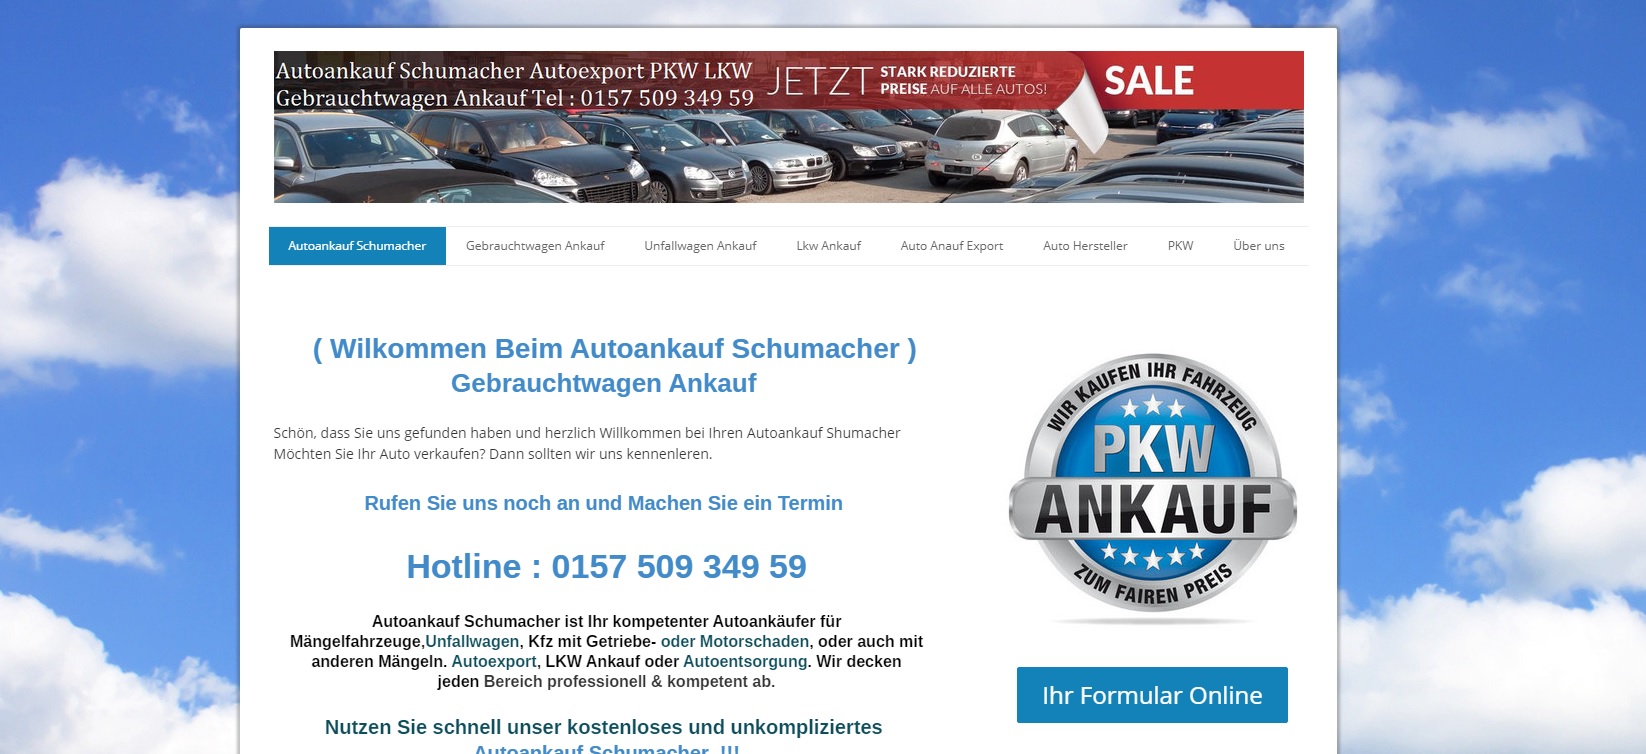 Autoankauf Bonn – Autoankauf Schumacher Gebrauchtwagen Ankauf aller KFZ auch Unfallwagen